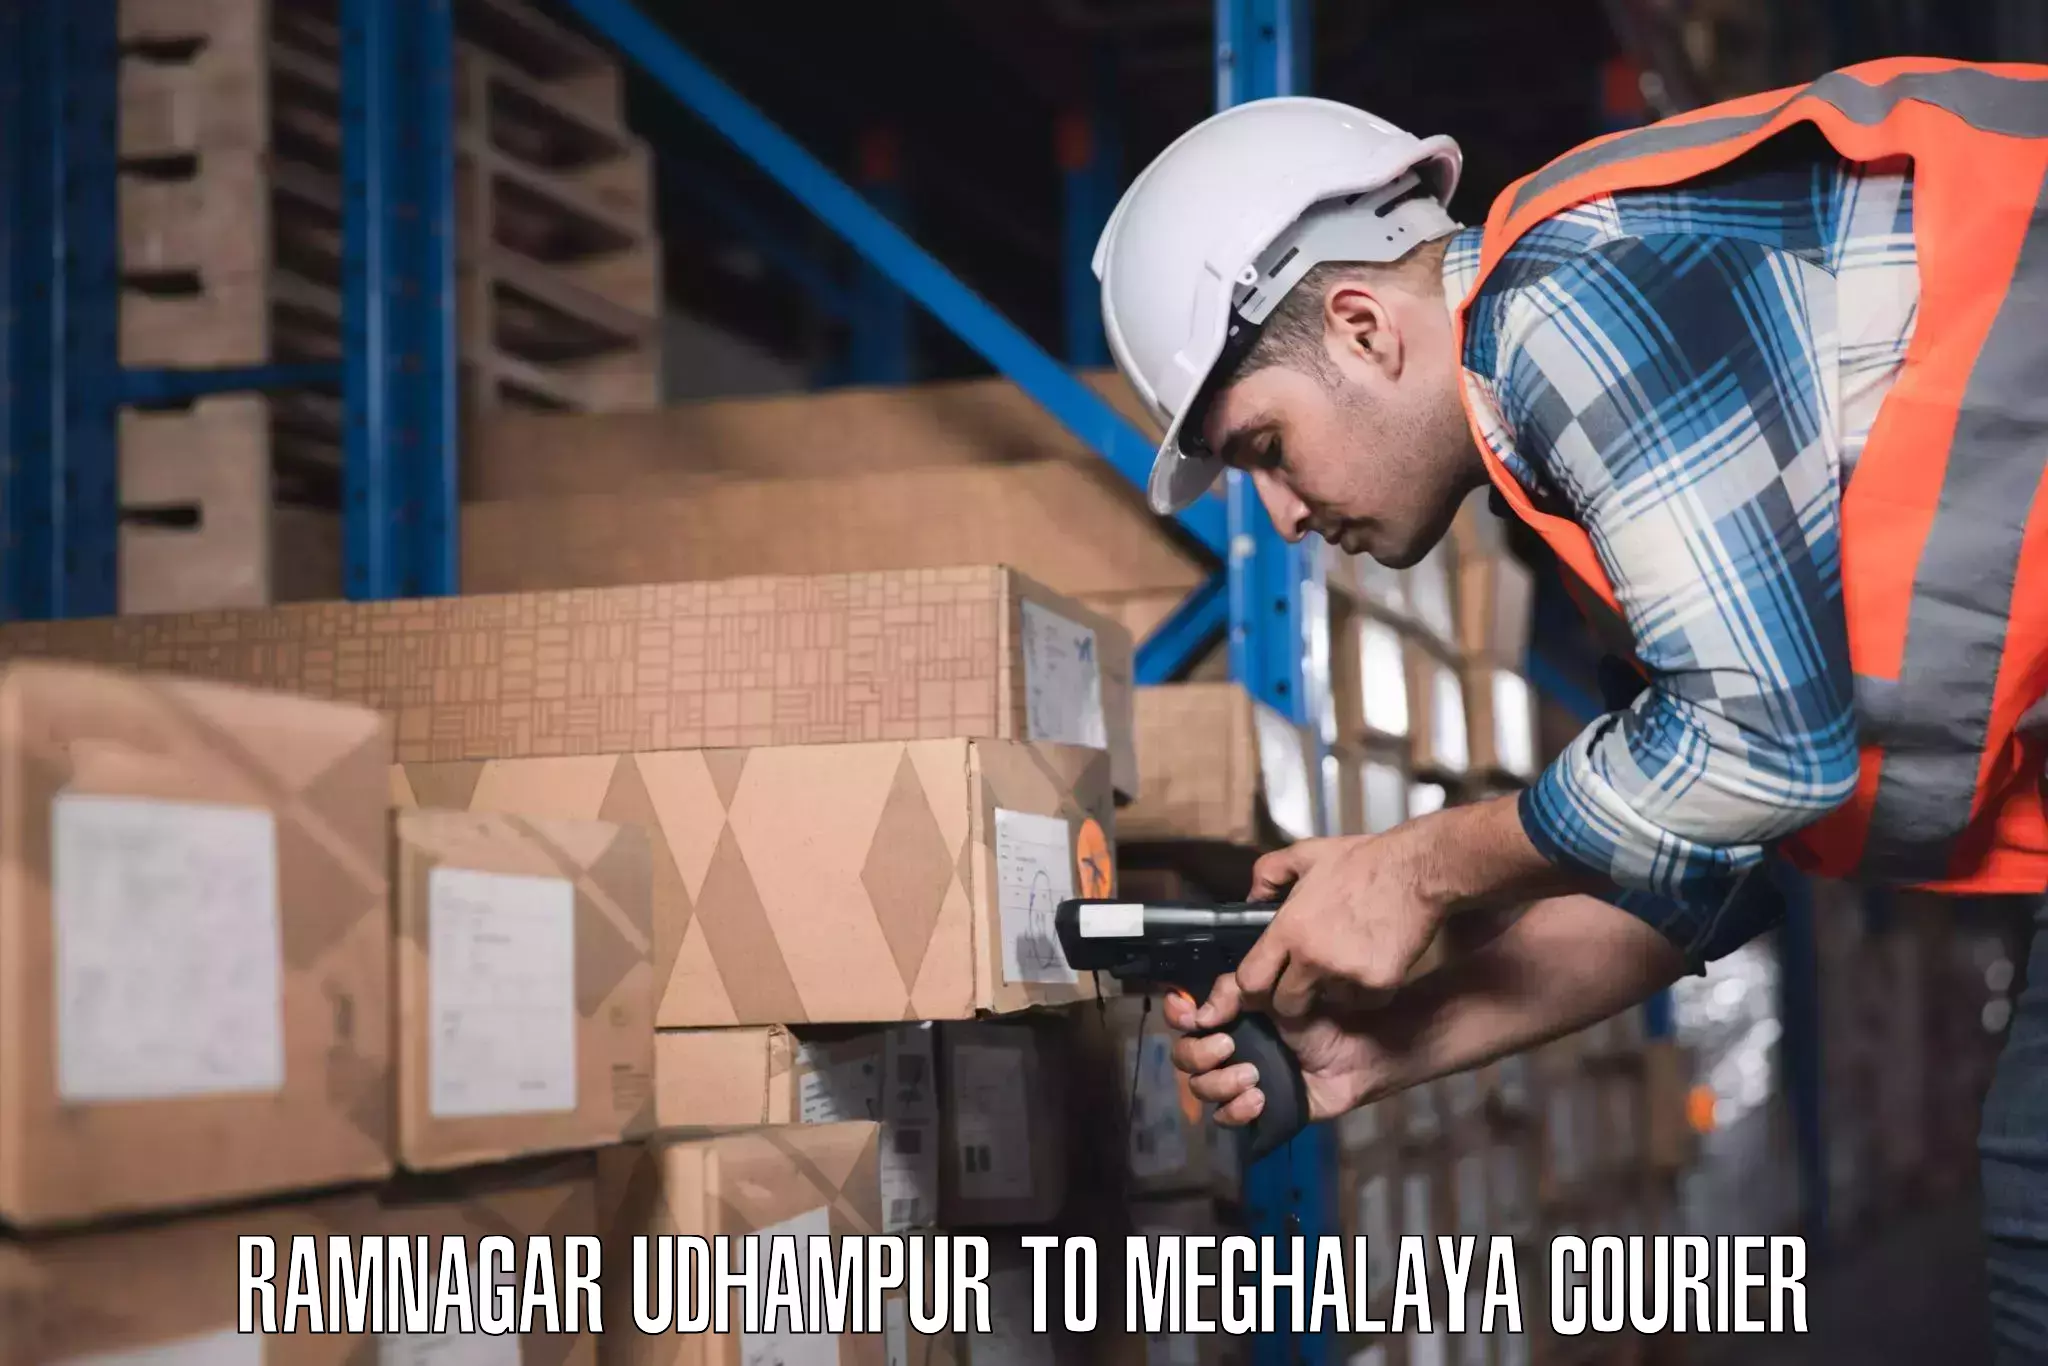 Baggage courier optimization Ramnagar Udhampur to Meghalaya